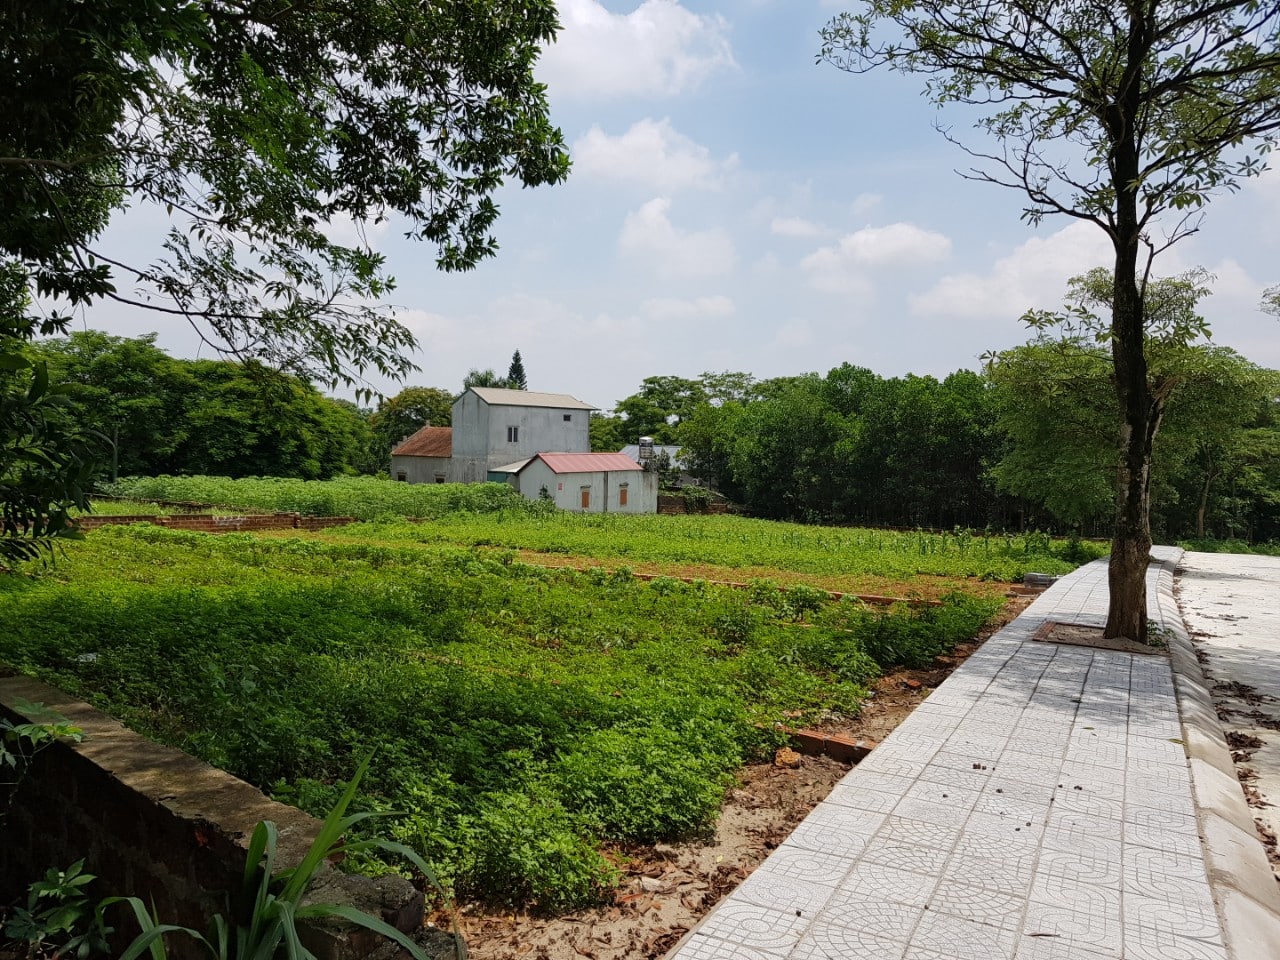 12 Lô Nhà vườn dự án Tái định cư Vai Réo Hòa Lạc diện tích 180m2 - 380m2